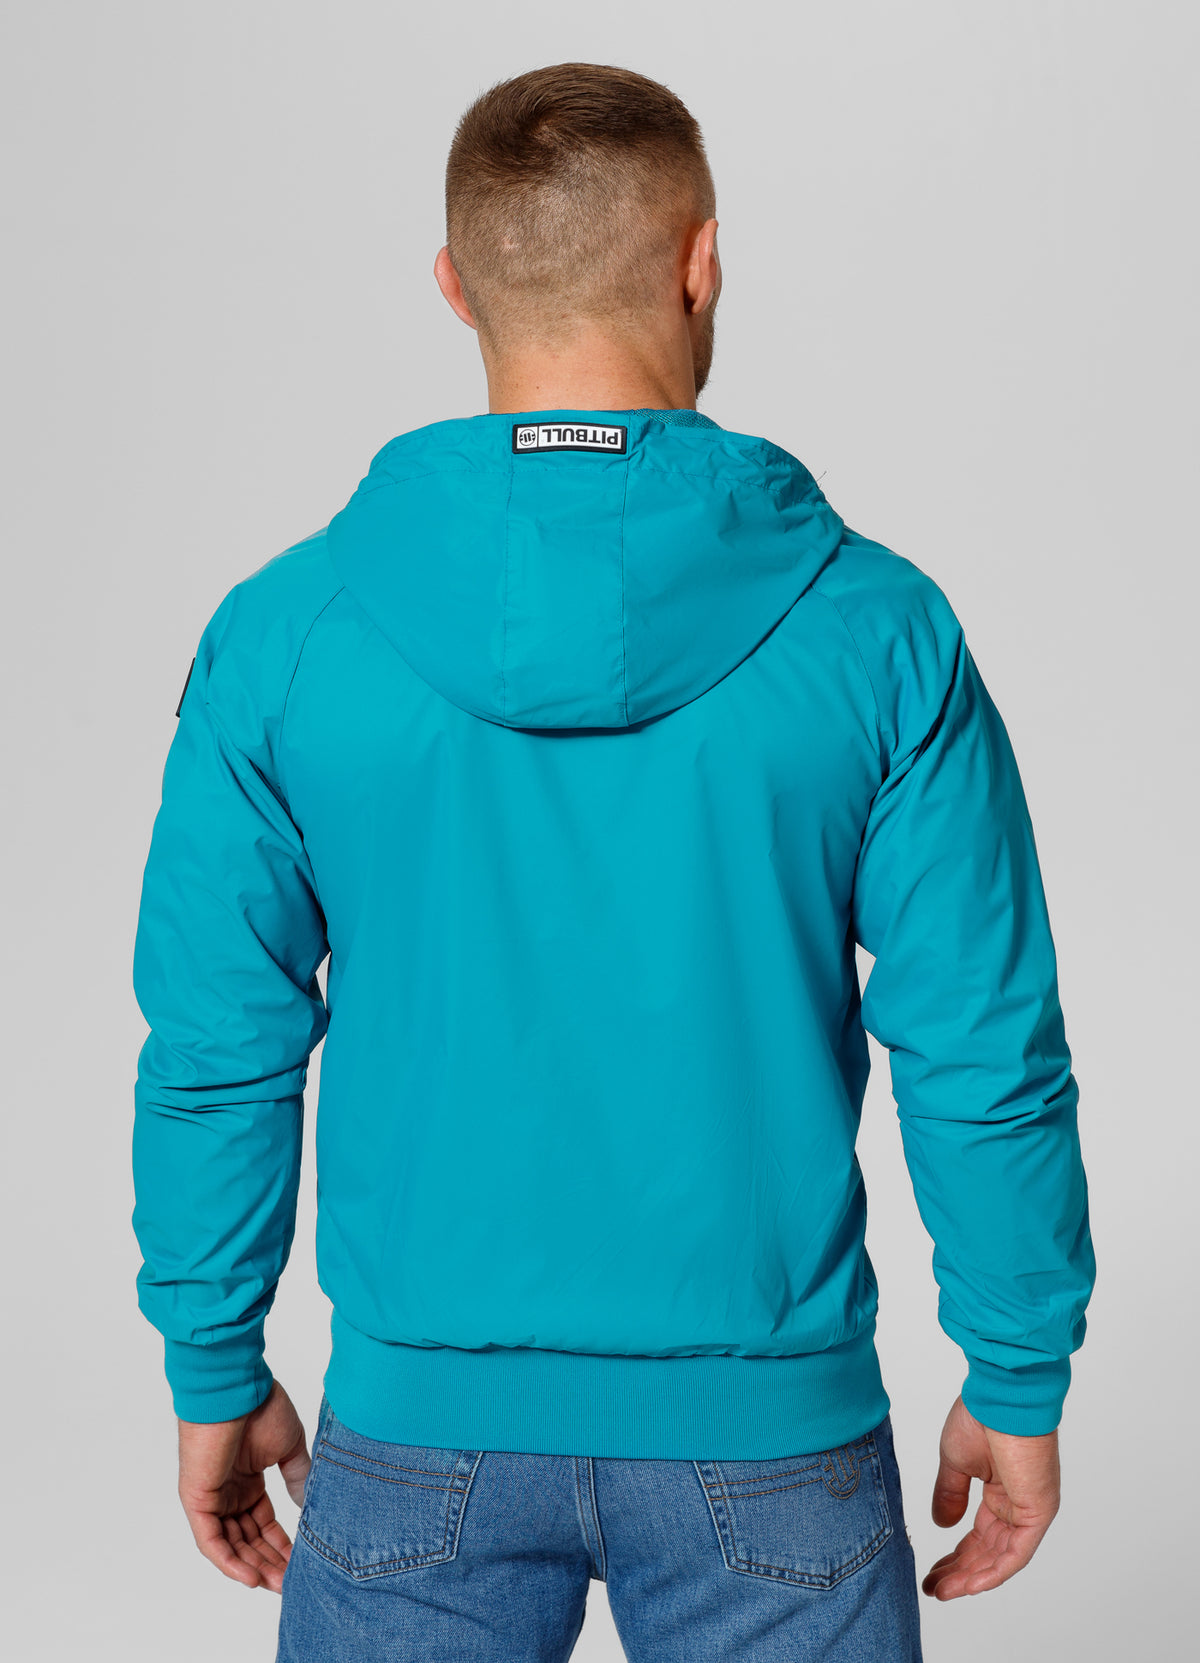 ATHLETIC LOGO Turquoise Jacket